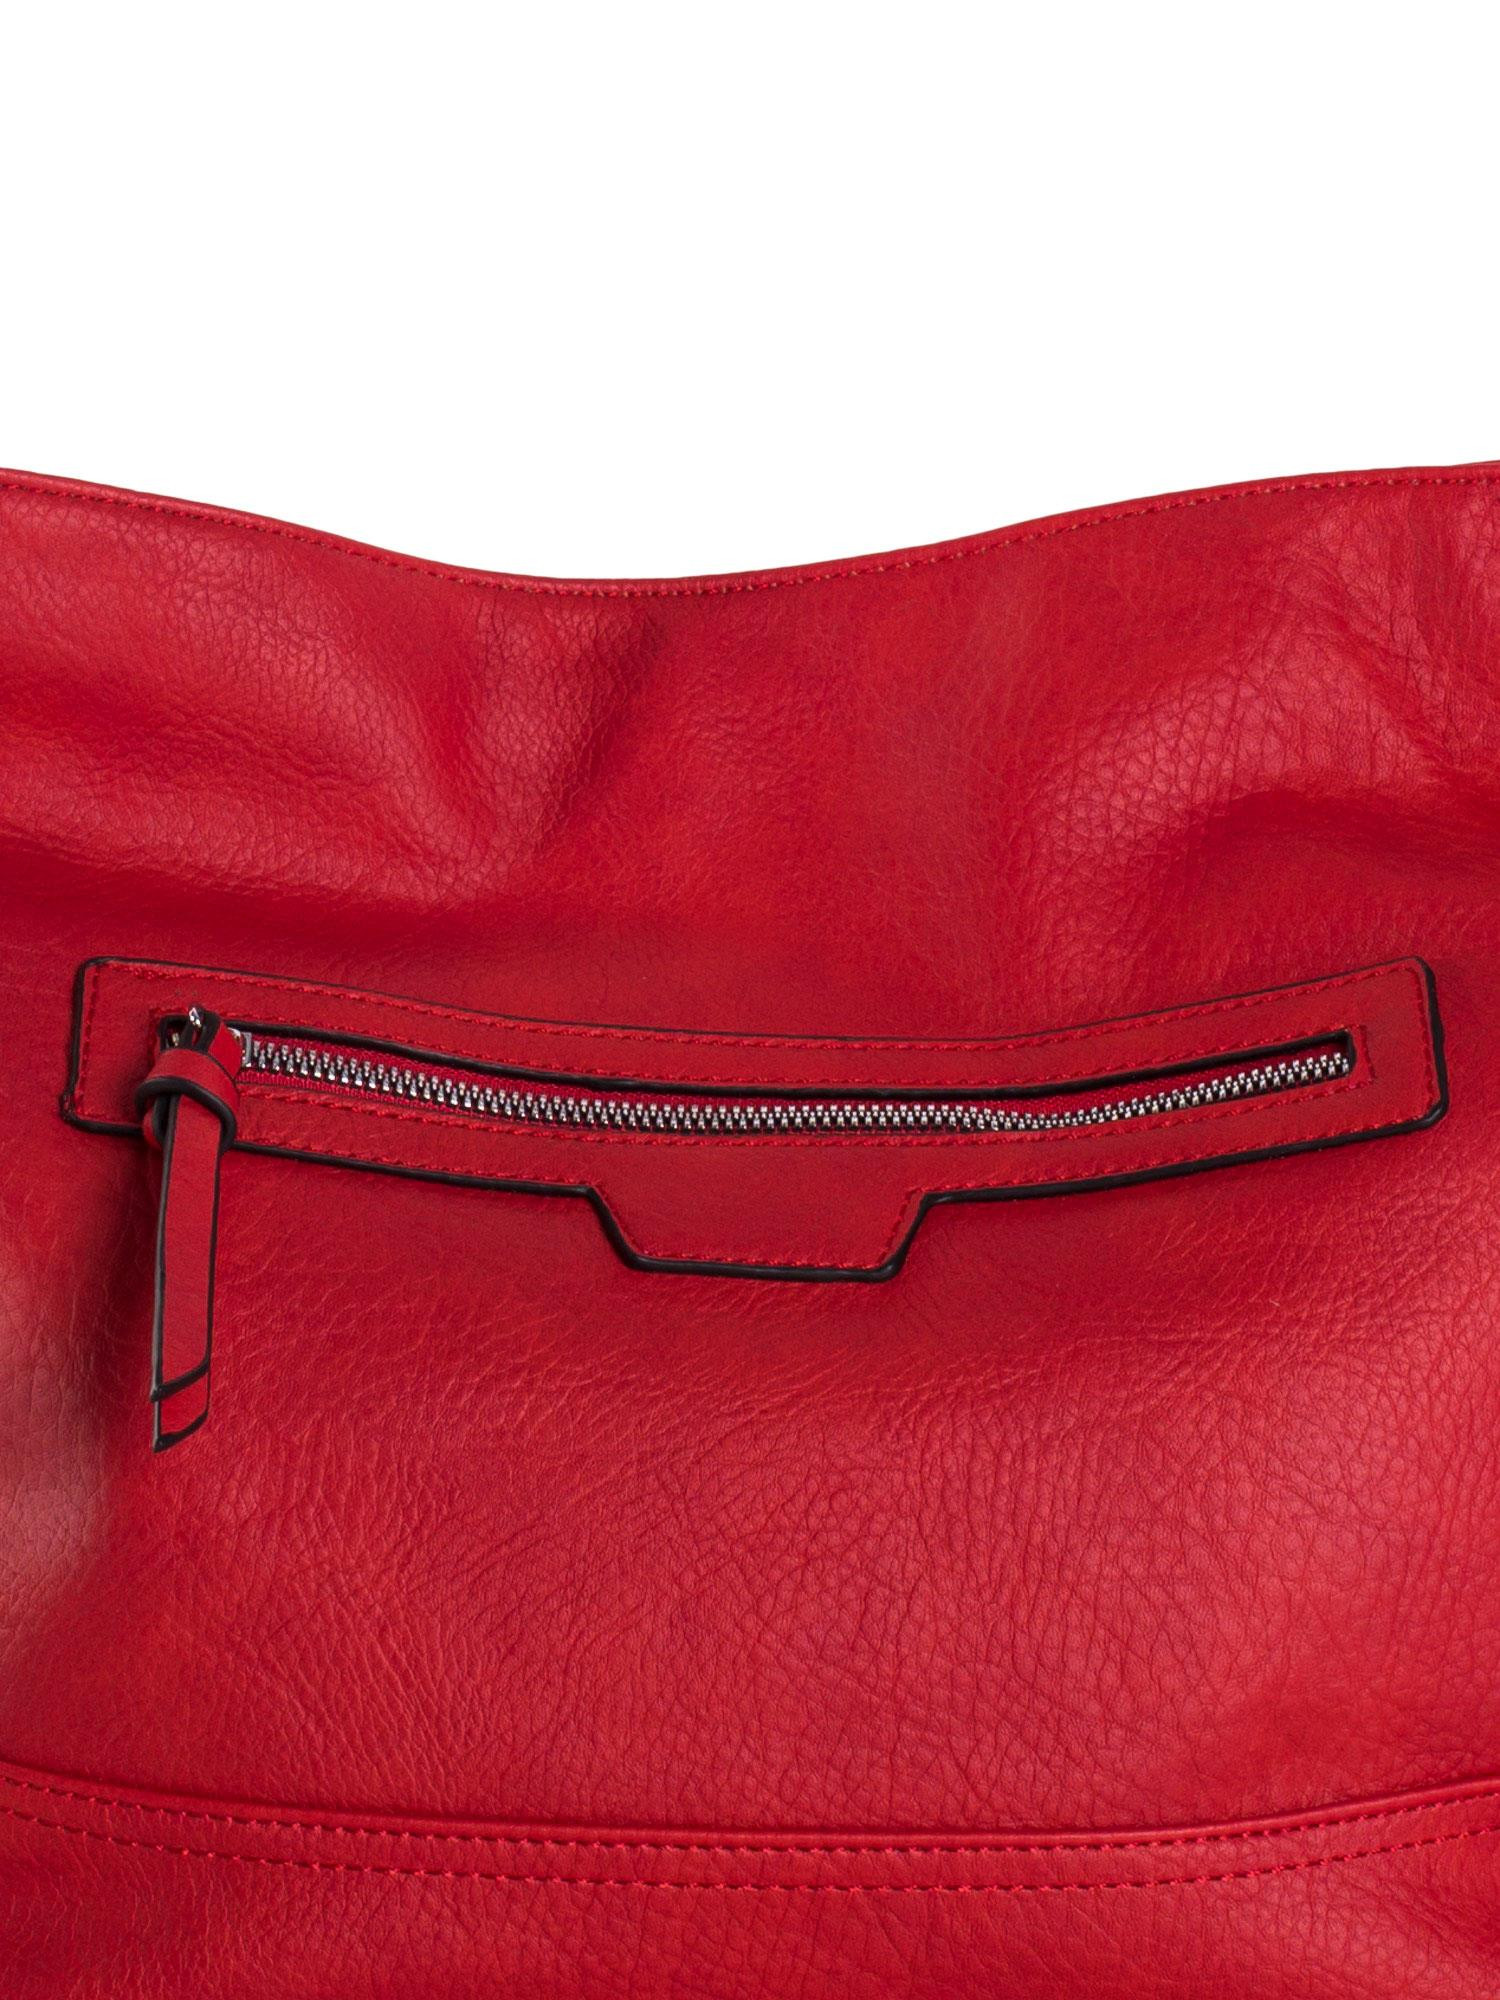 Dámská kabelka OW TR model 17724128 červená - FPrice Velikost: jedna velikost